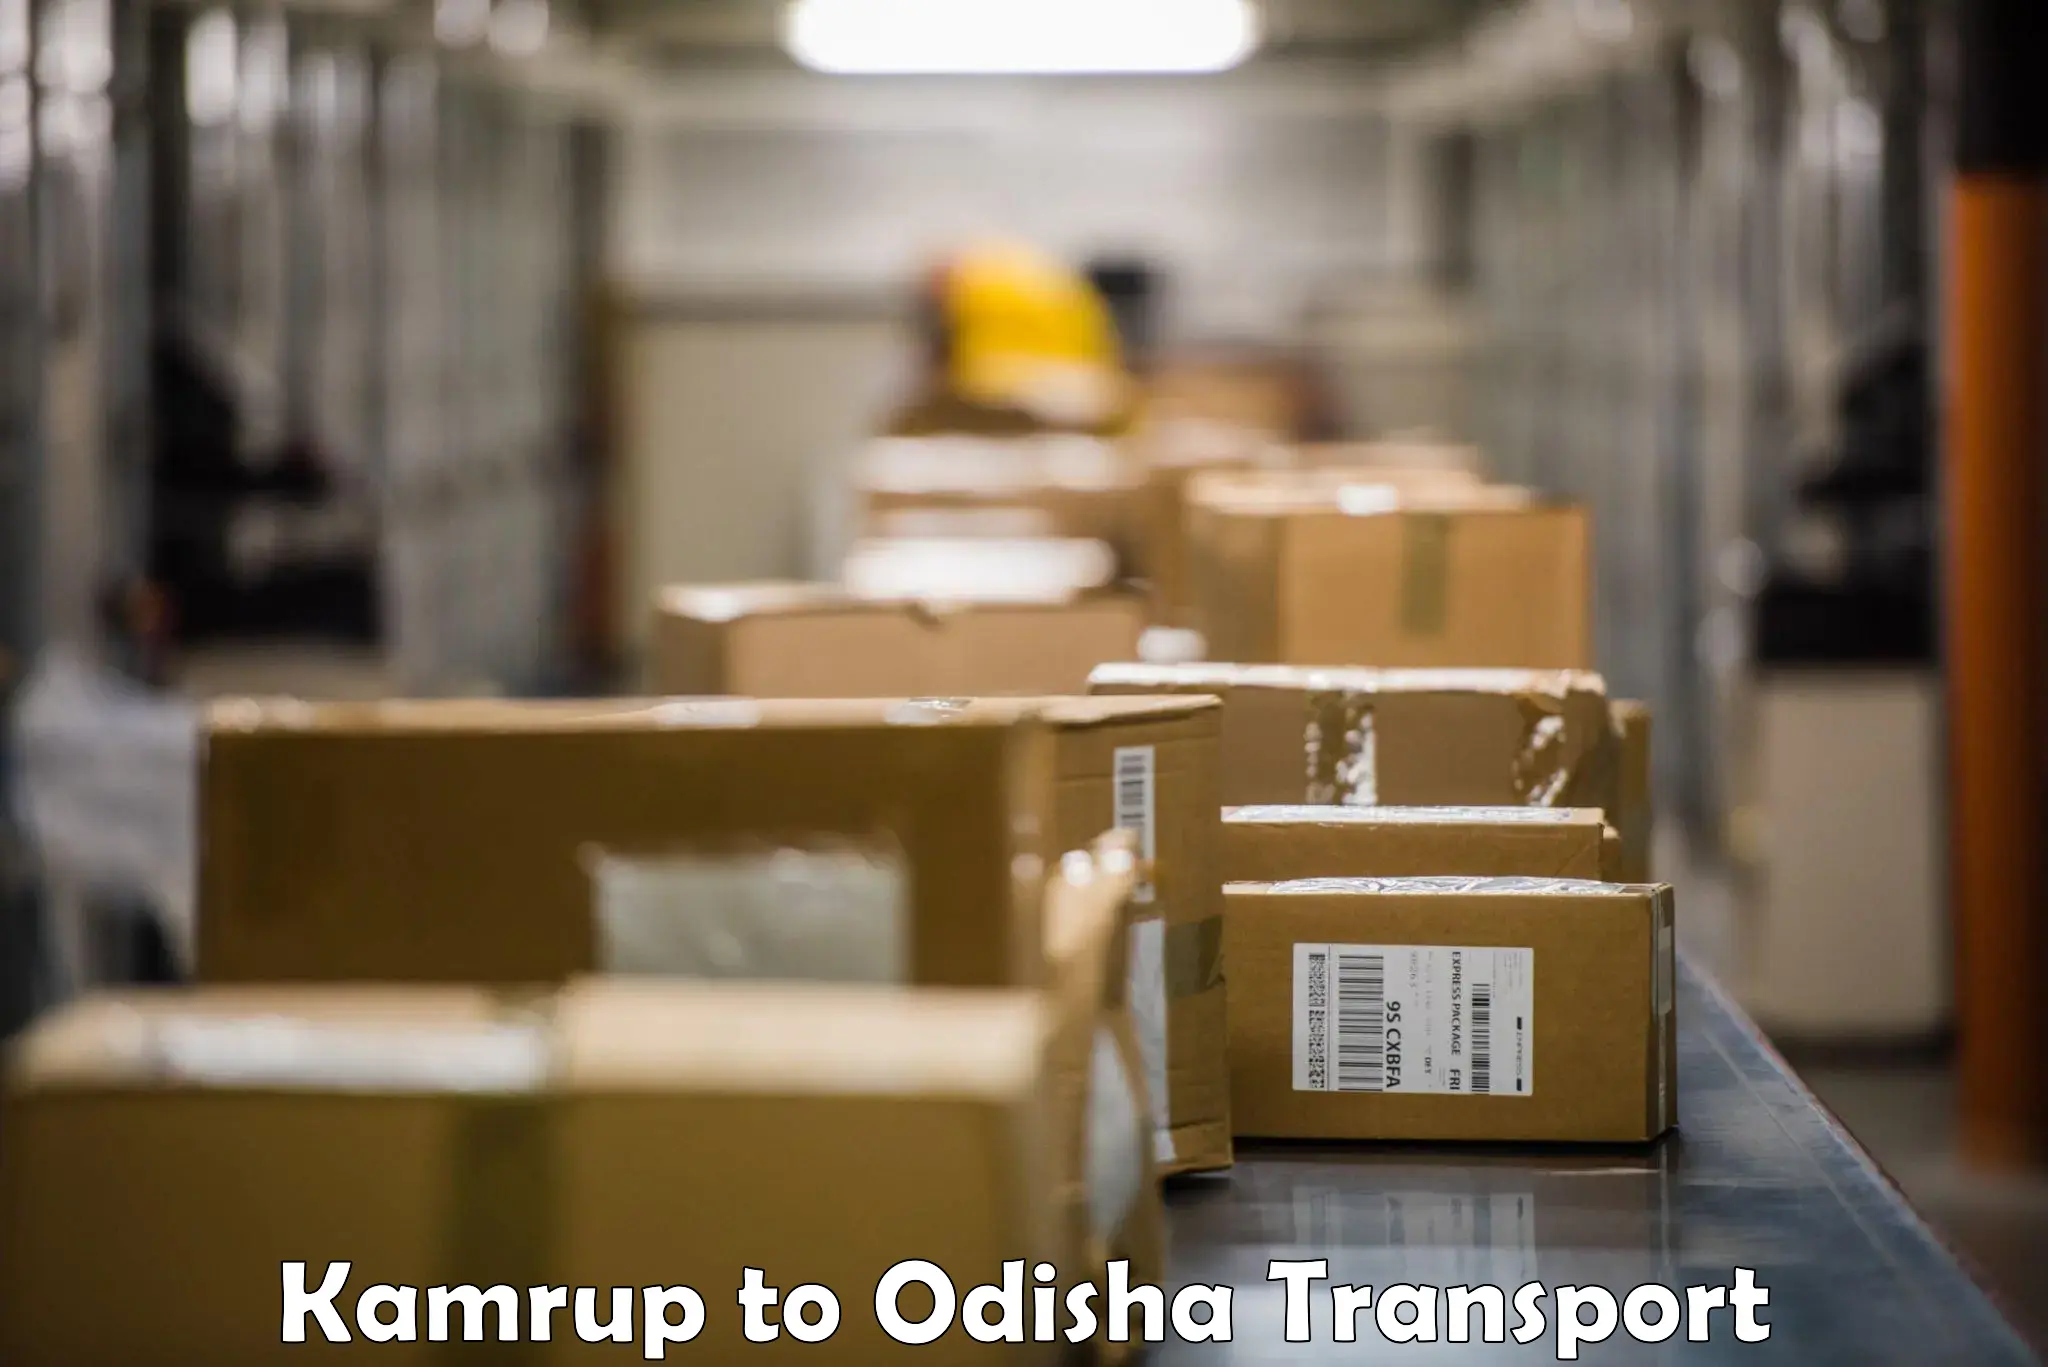 Furniture transport service Kamrup to Odisha